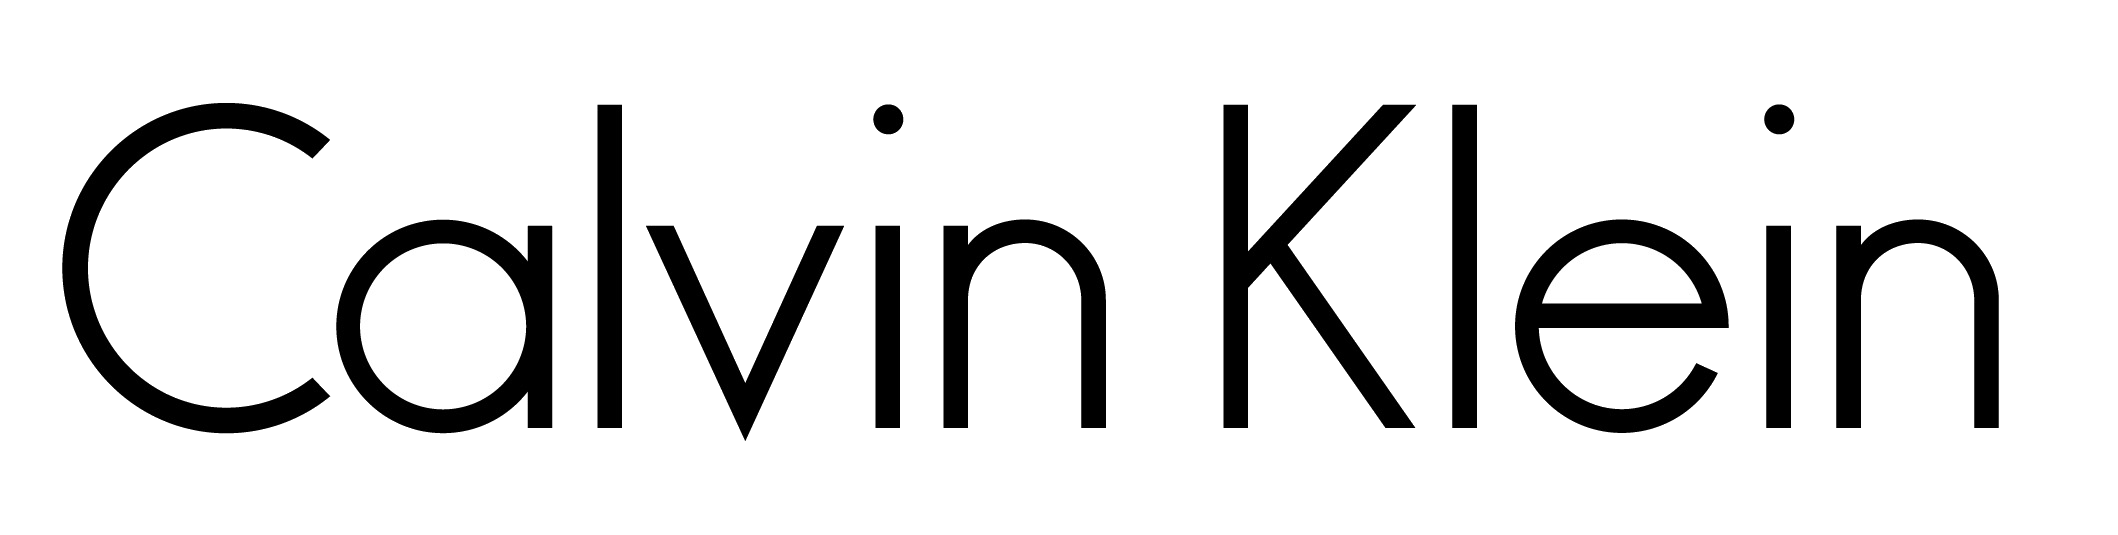 Calvin Klein Logo PNG - 179580